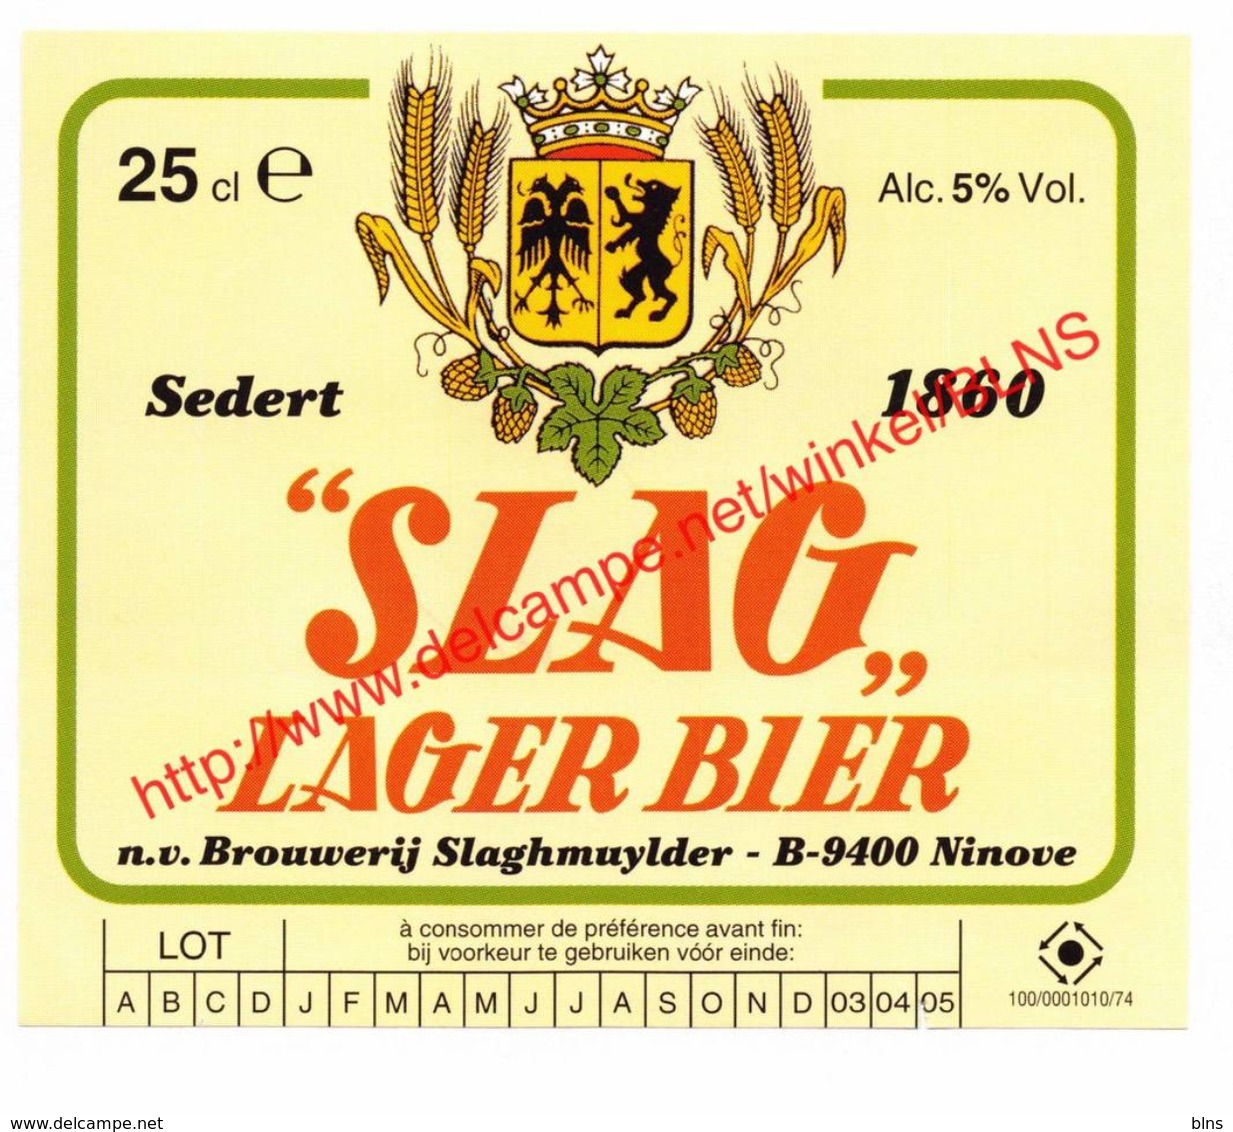 Lot van 41 etiketten  Brouwerij Slaghmuylder